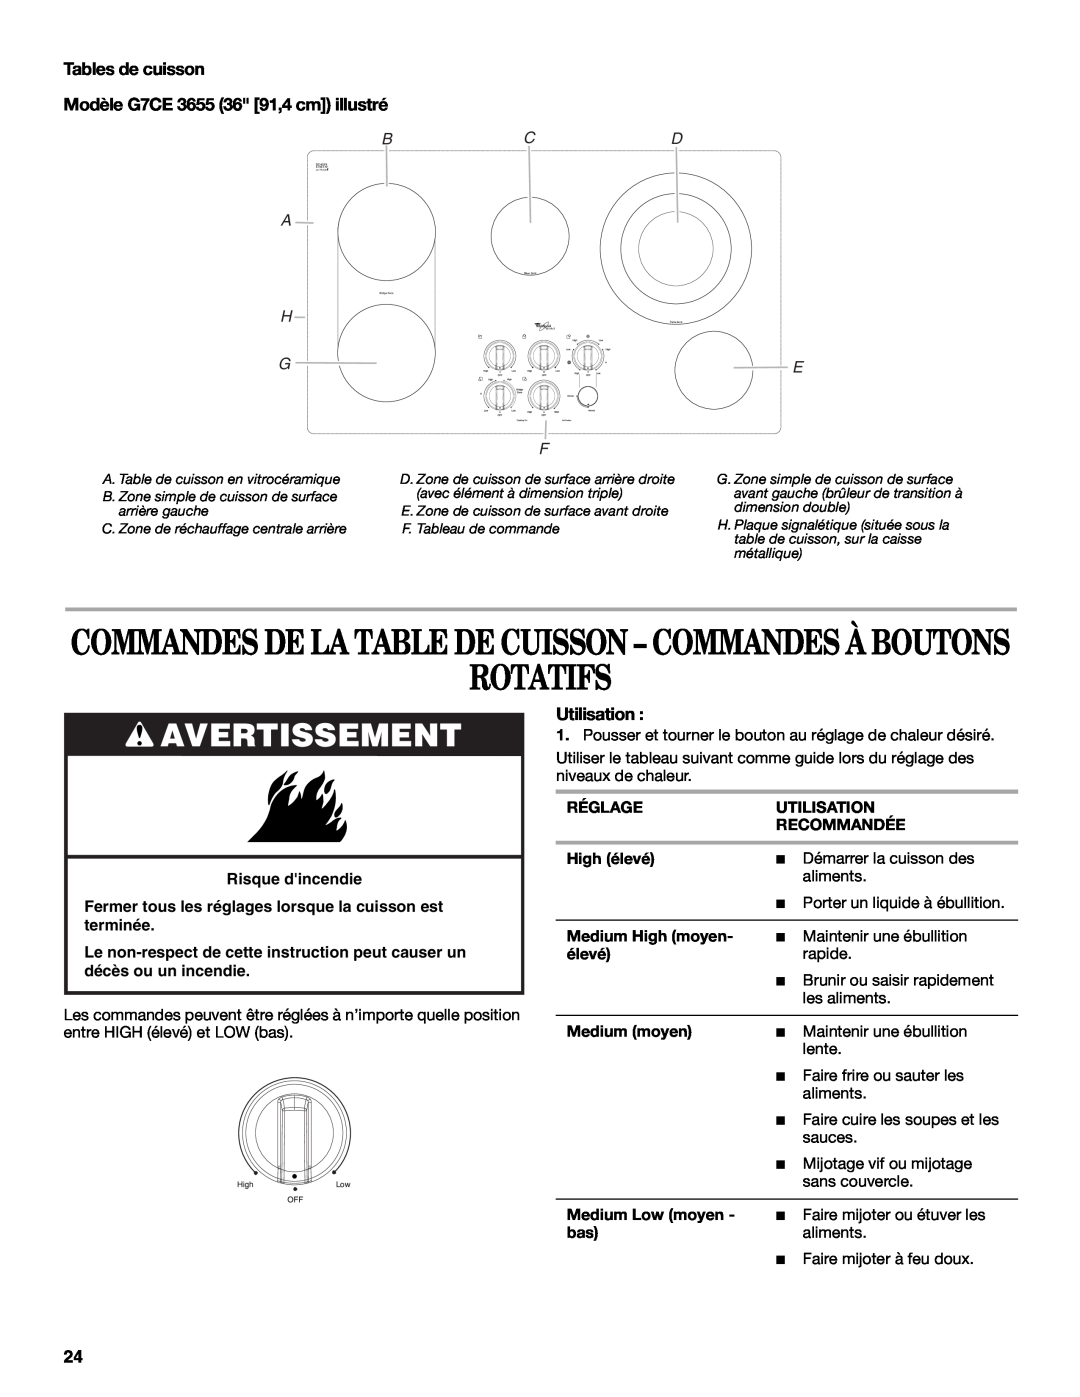 Whirlpool G9CE3065XB manual Rotatifs, Commandes De La Table De Cuisson - Commandes À Boutons, Bcd A H G, Avertissement 